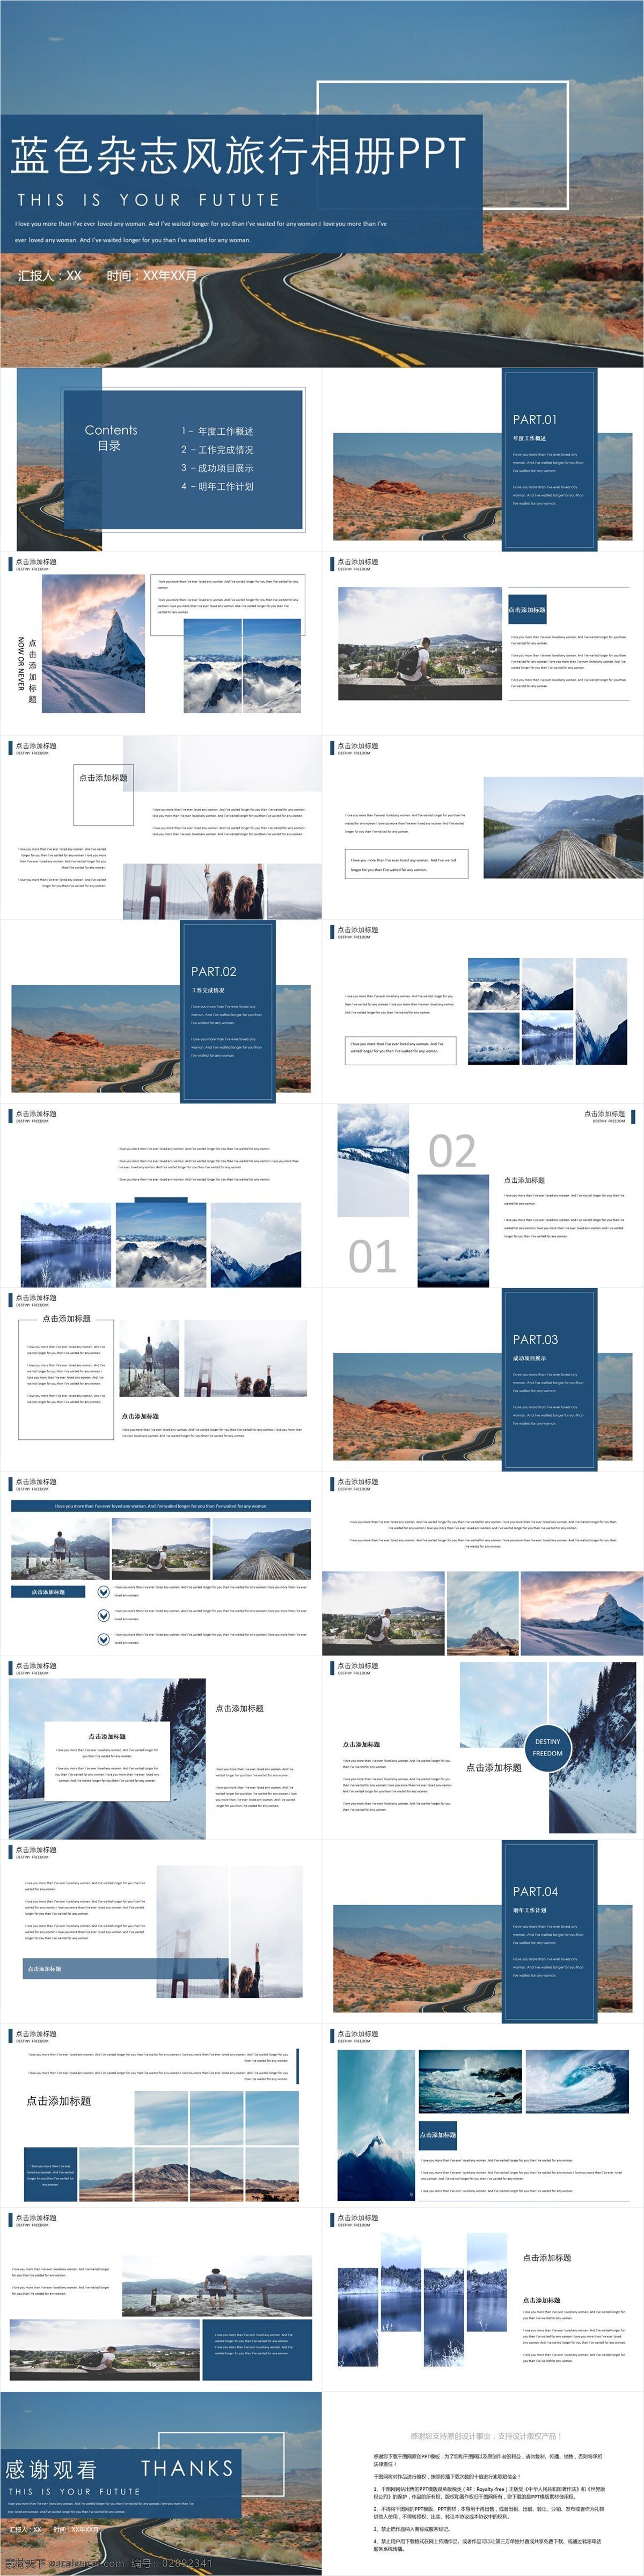 蓝色 杂志 风 旅游 相册 模板 创意 画册 企业简介 杂志风 企业宣传 产品介绍 商务合作 策划